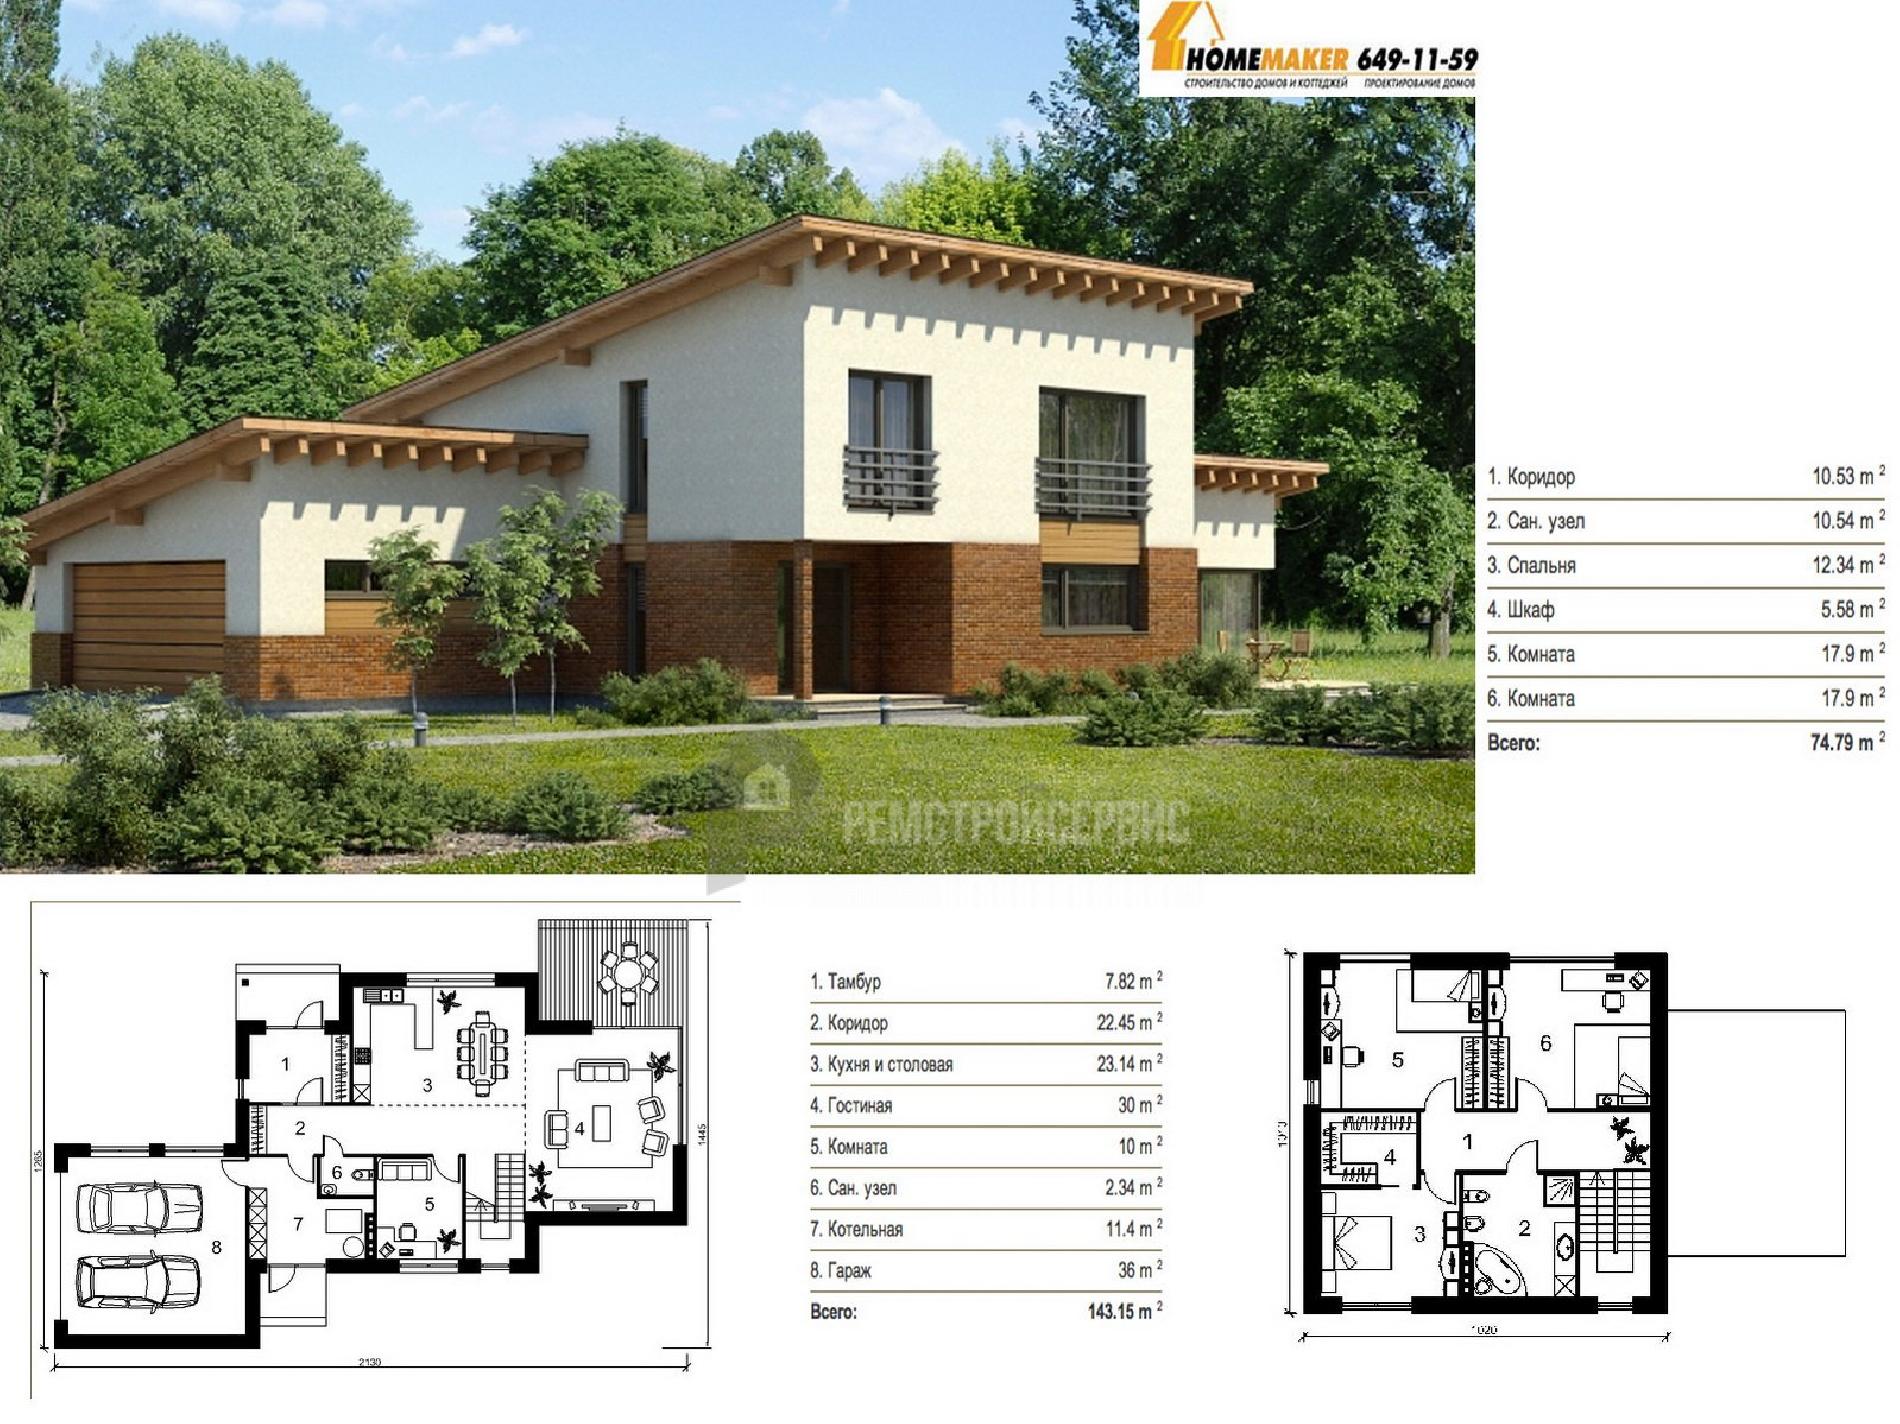 Дома до 100 кв. м. — типовые проекты и примеры готовых моделей маленьких домов (90 фото)